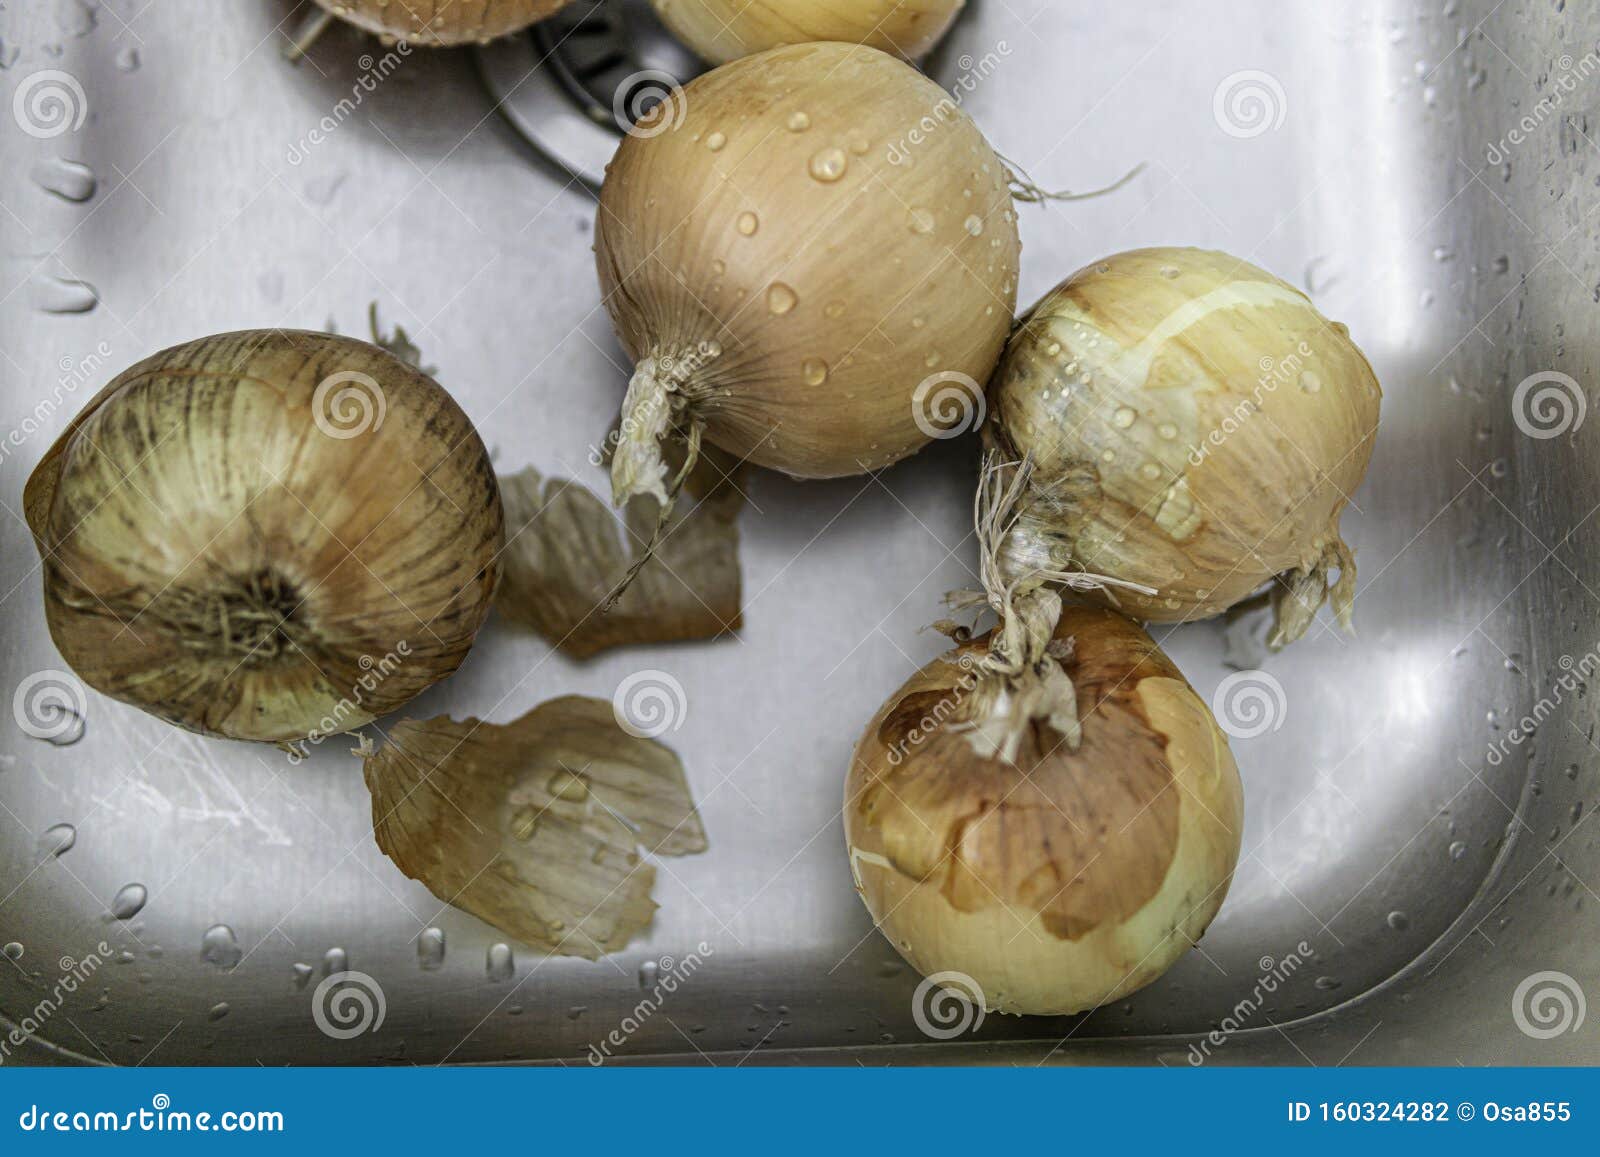 onions in kitchen sink